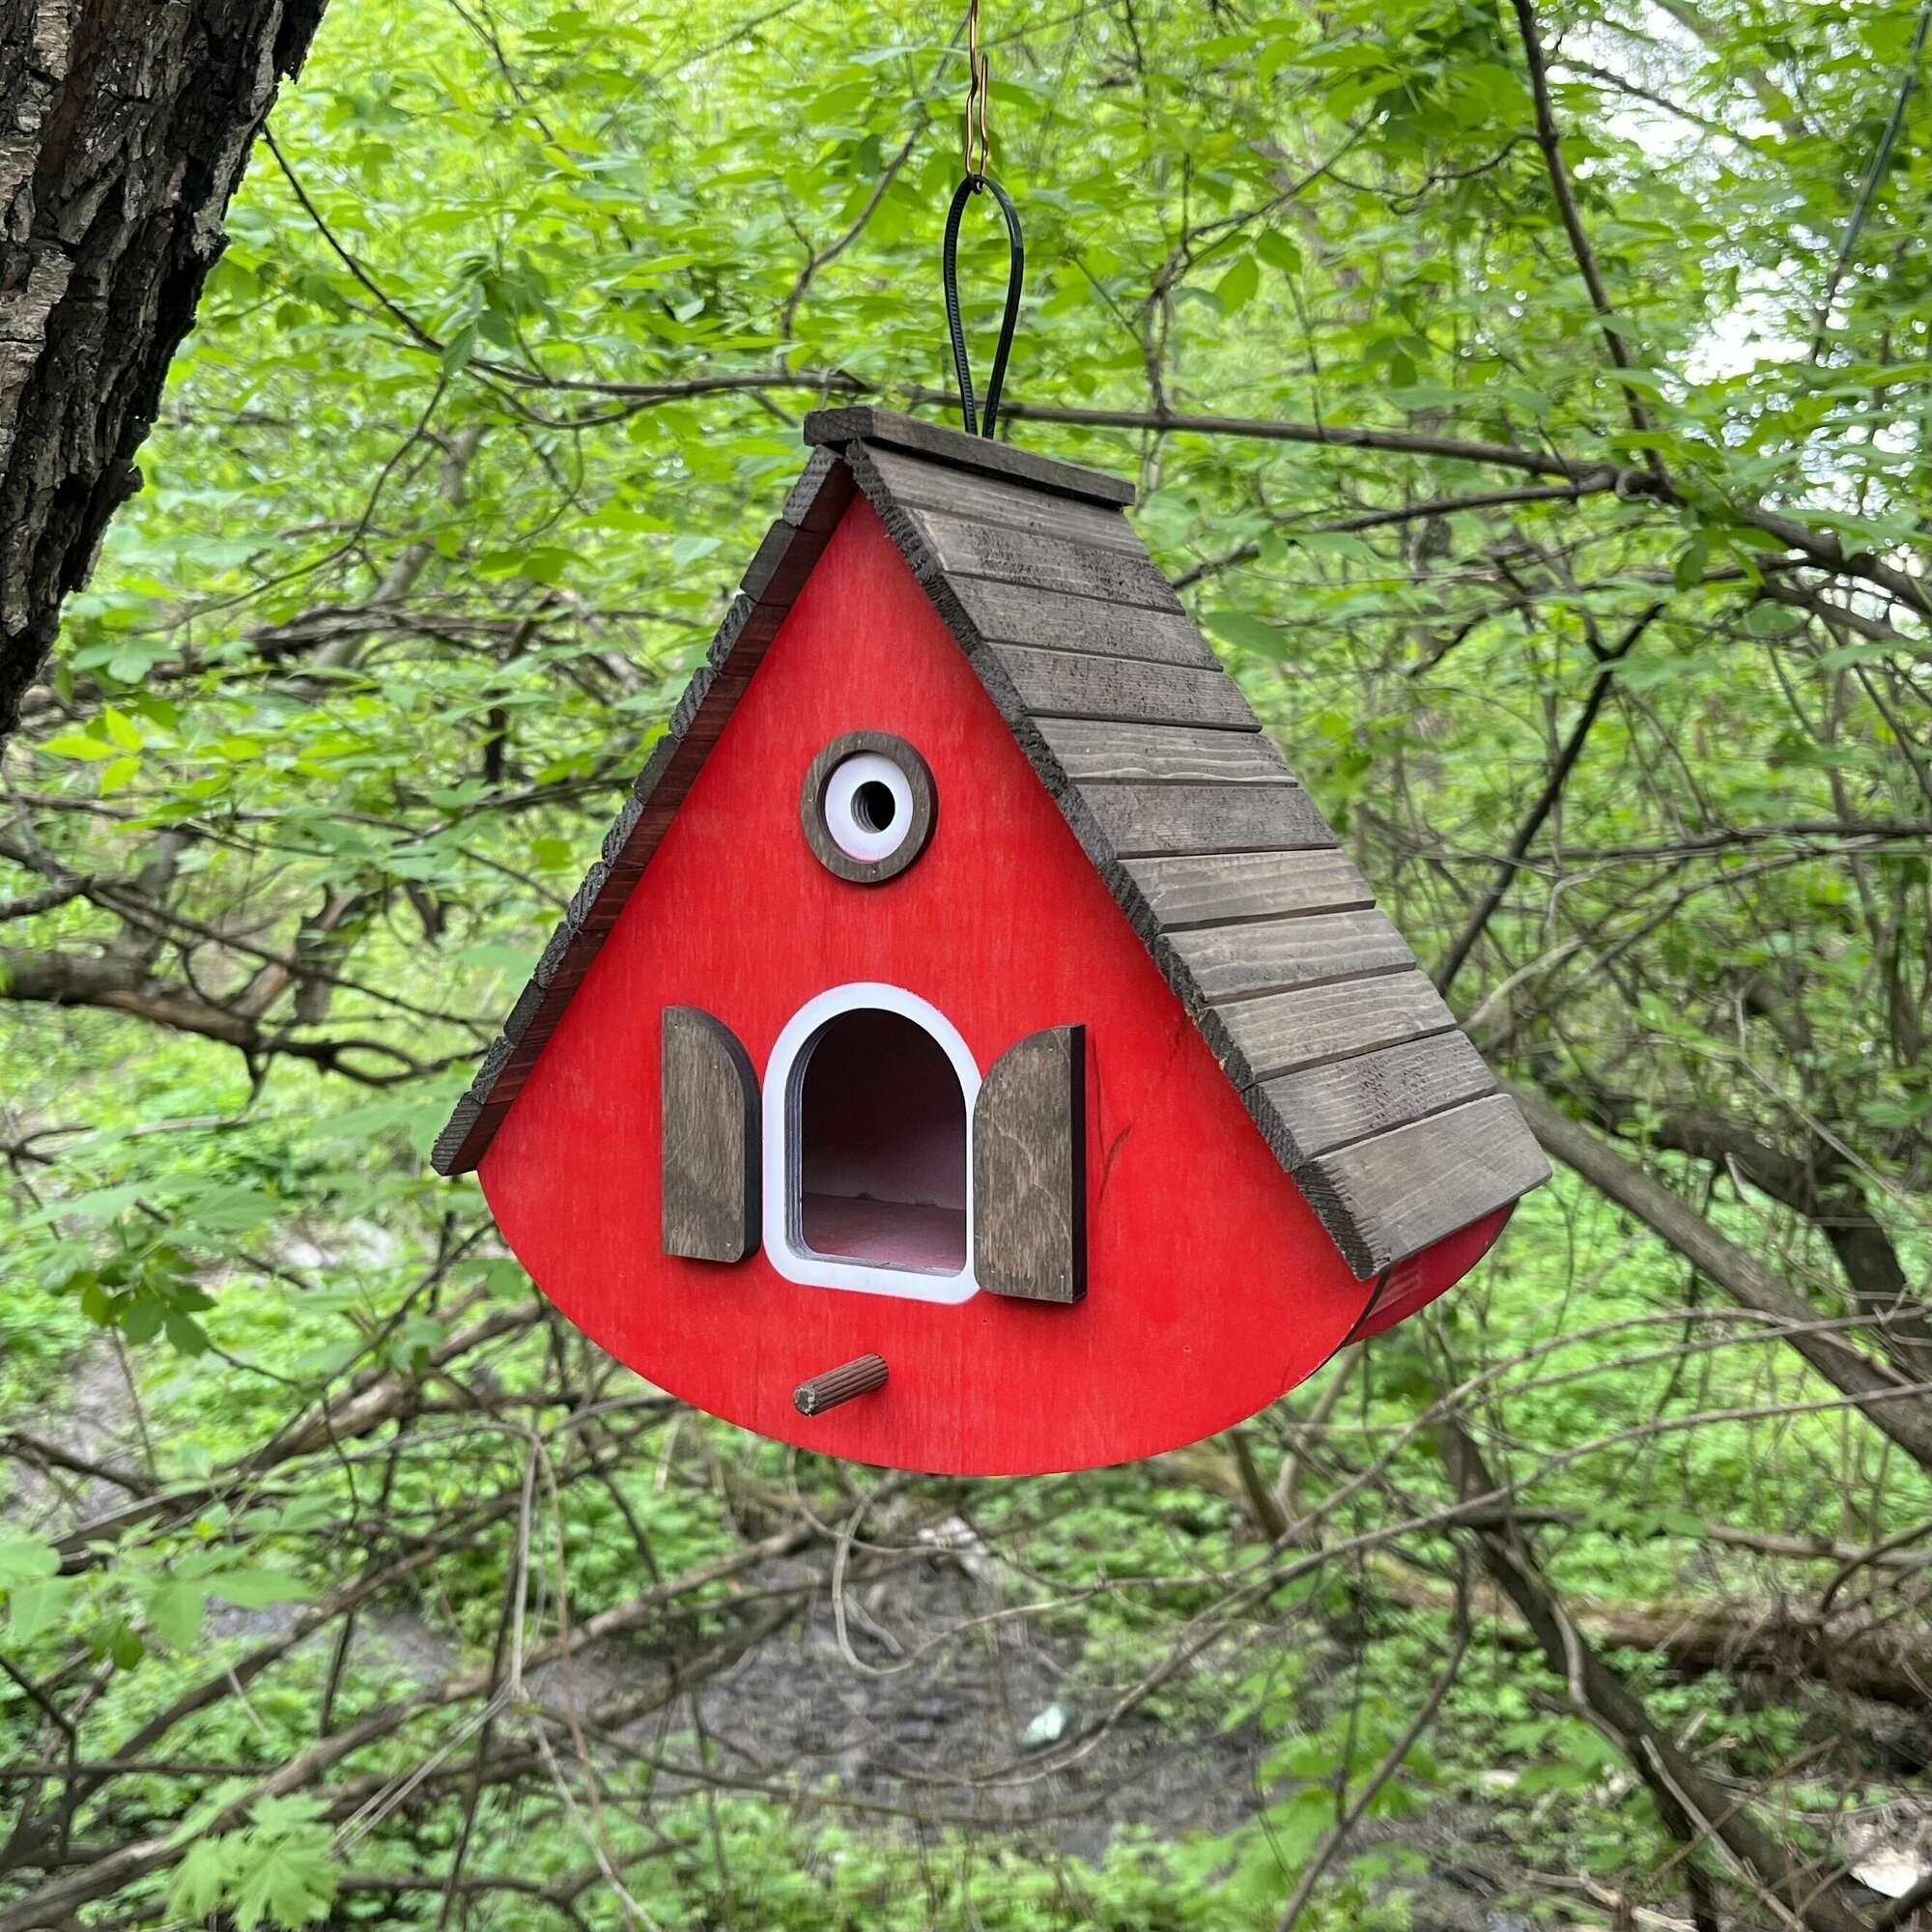 Деревянный скворечник для птиц PinePeak / Кормушка для птиц подвесная для дачи и сада, 250х260х150мм